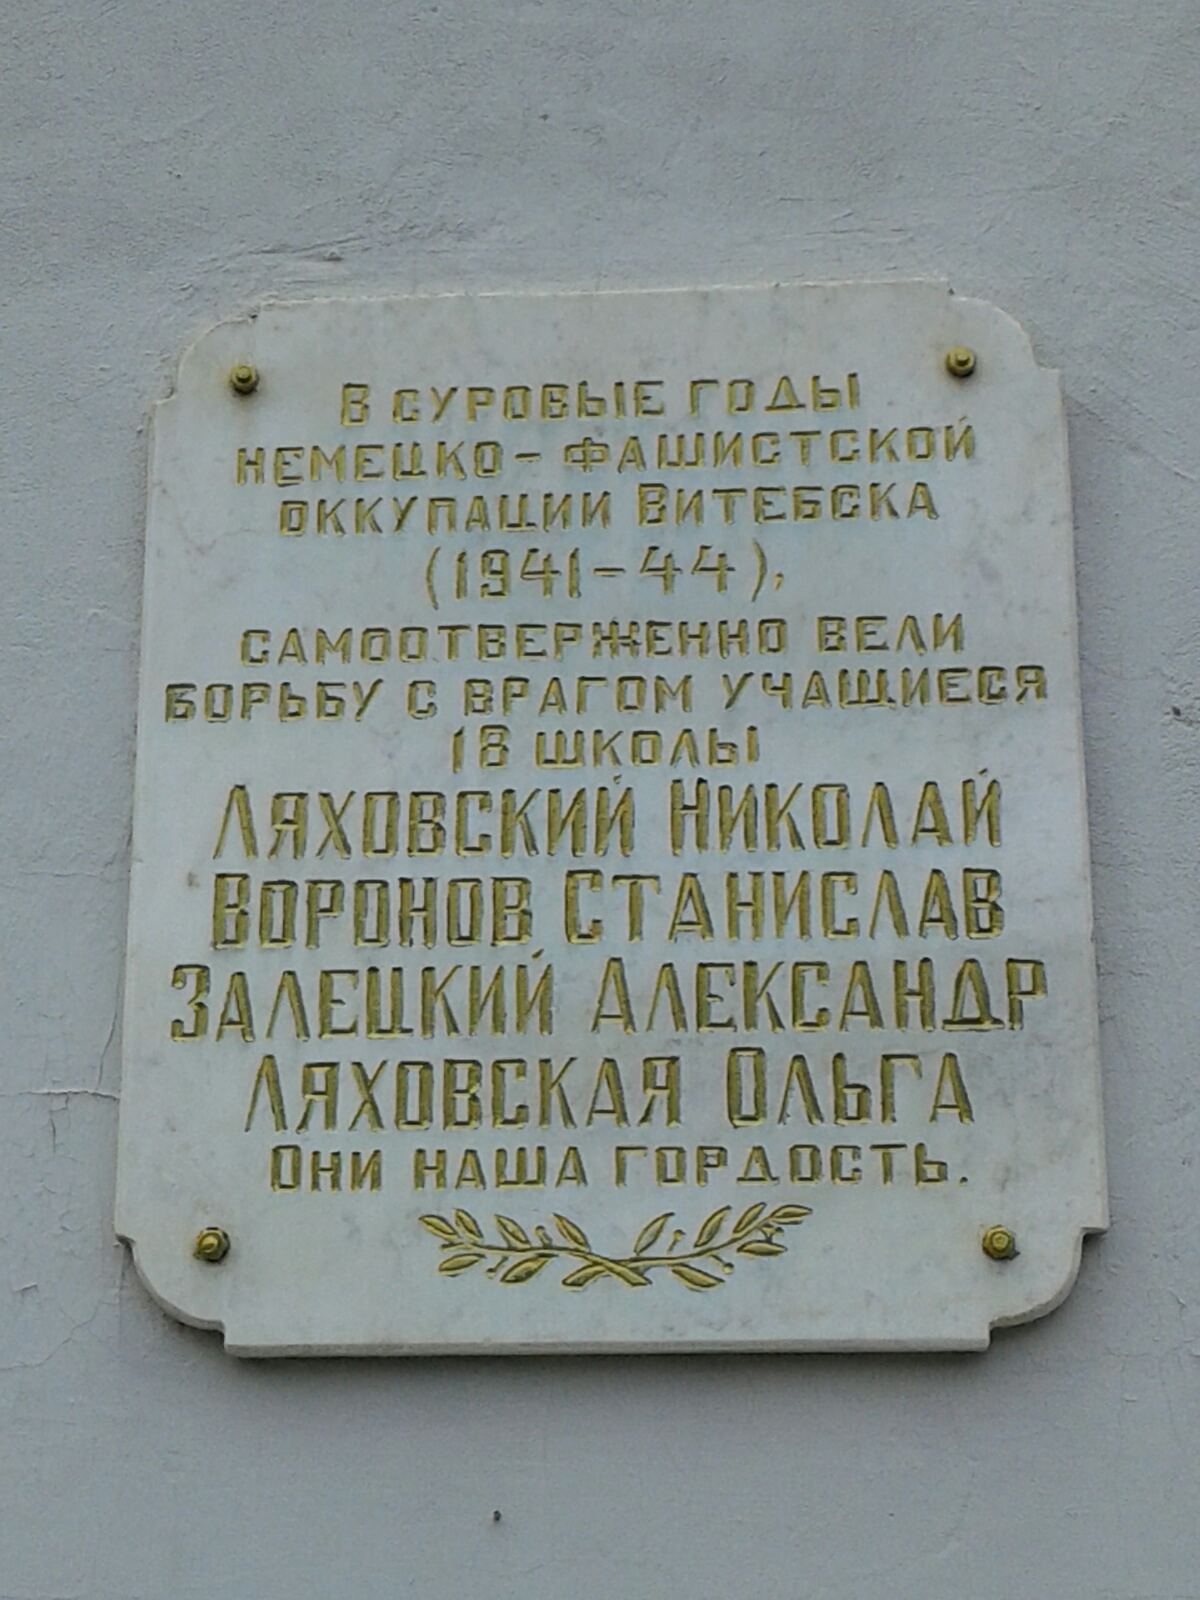 Мемориальная доска Ученикам школы, расположенная в г. Витебск,  район, Витебская область